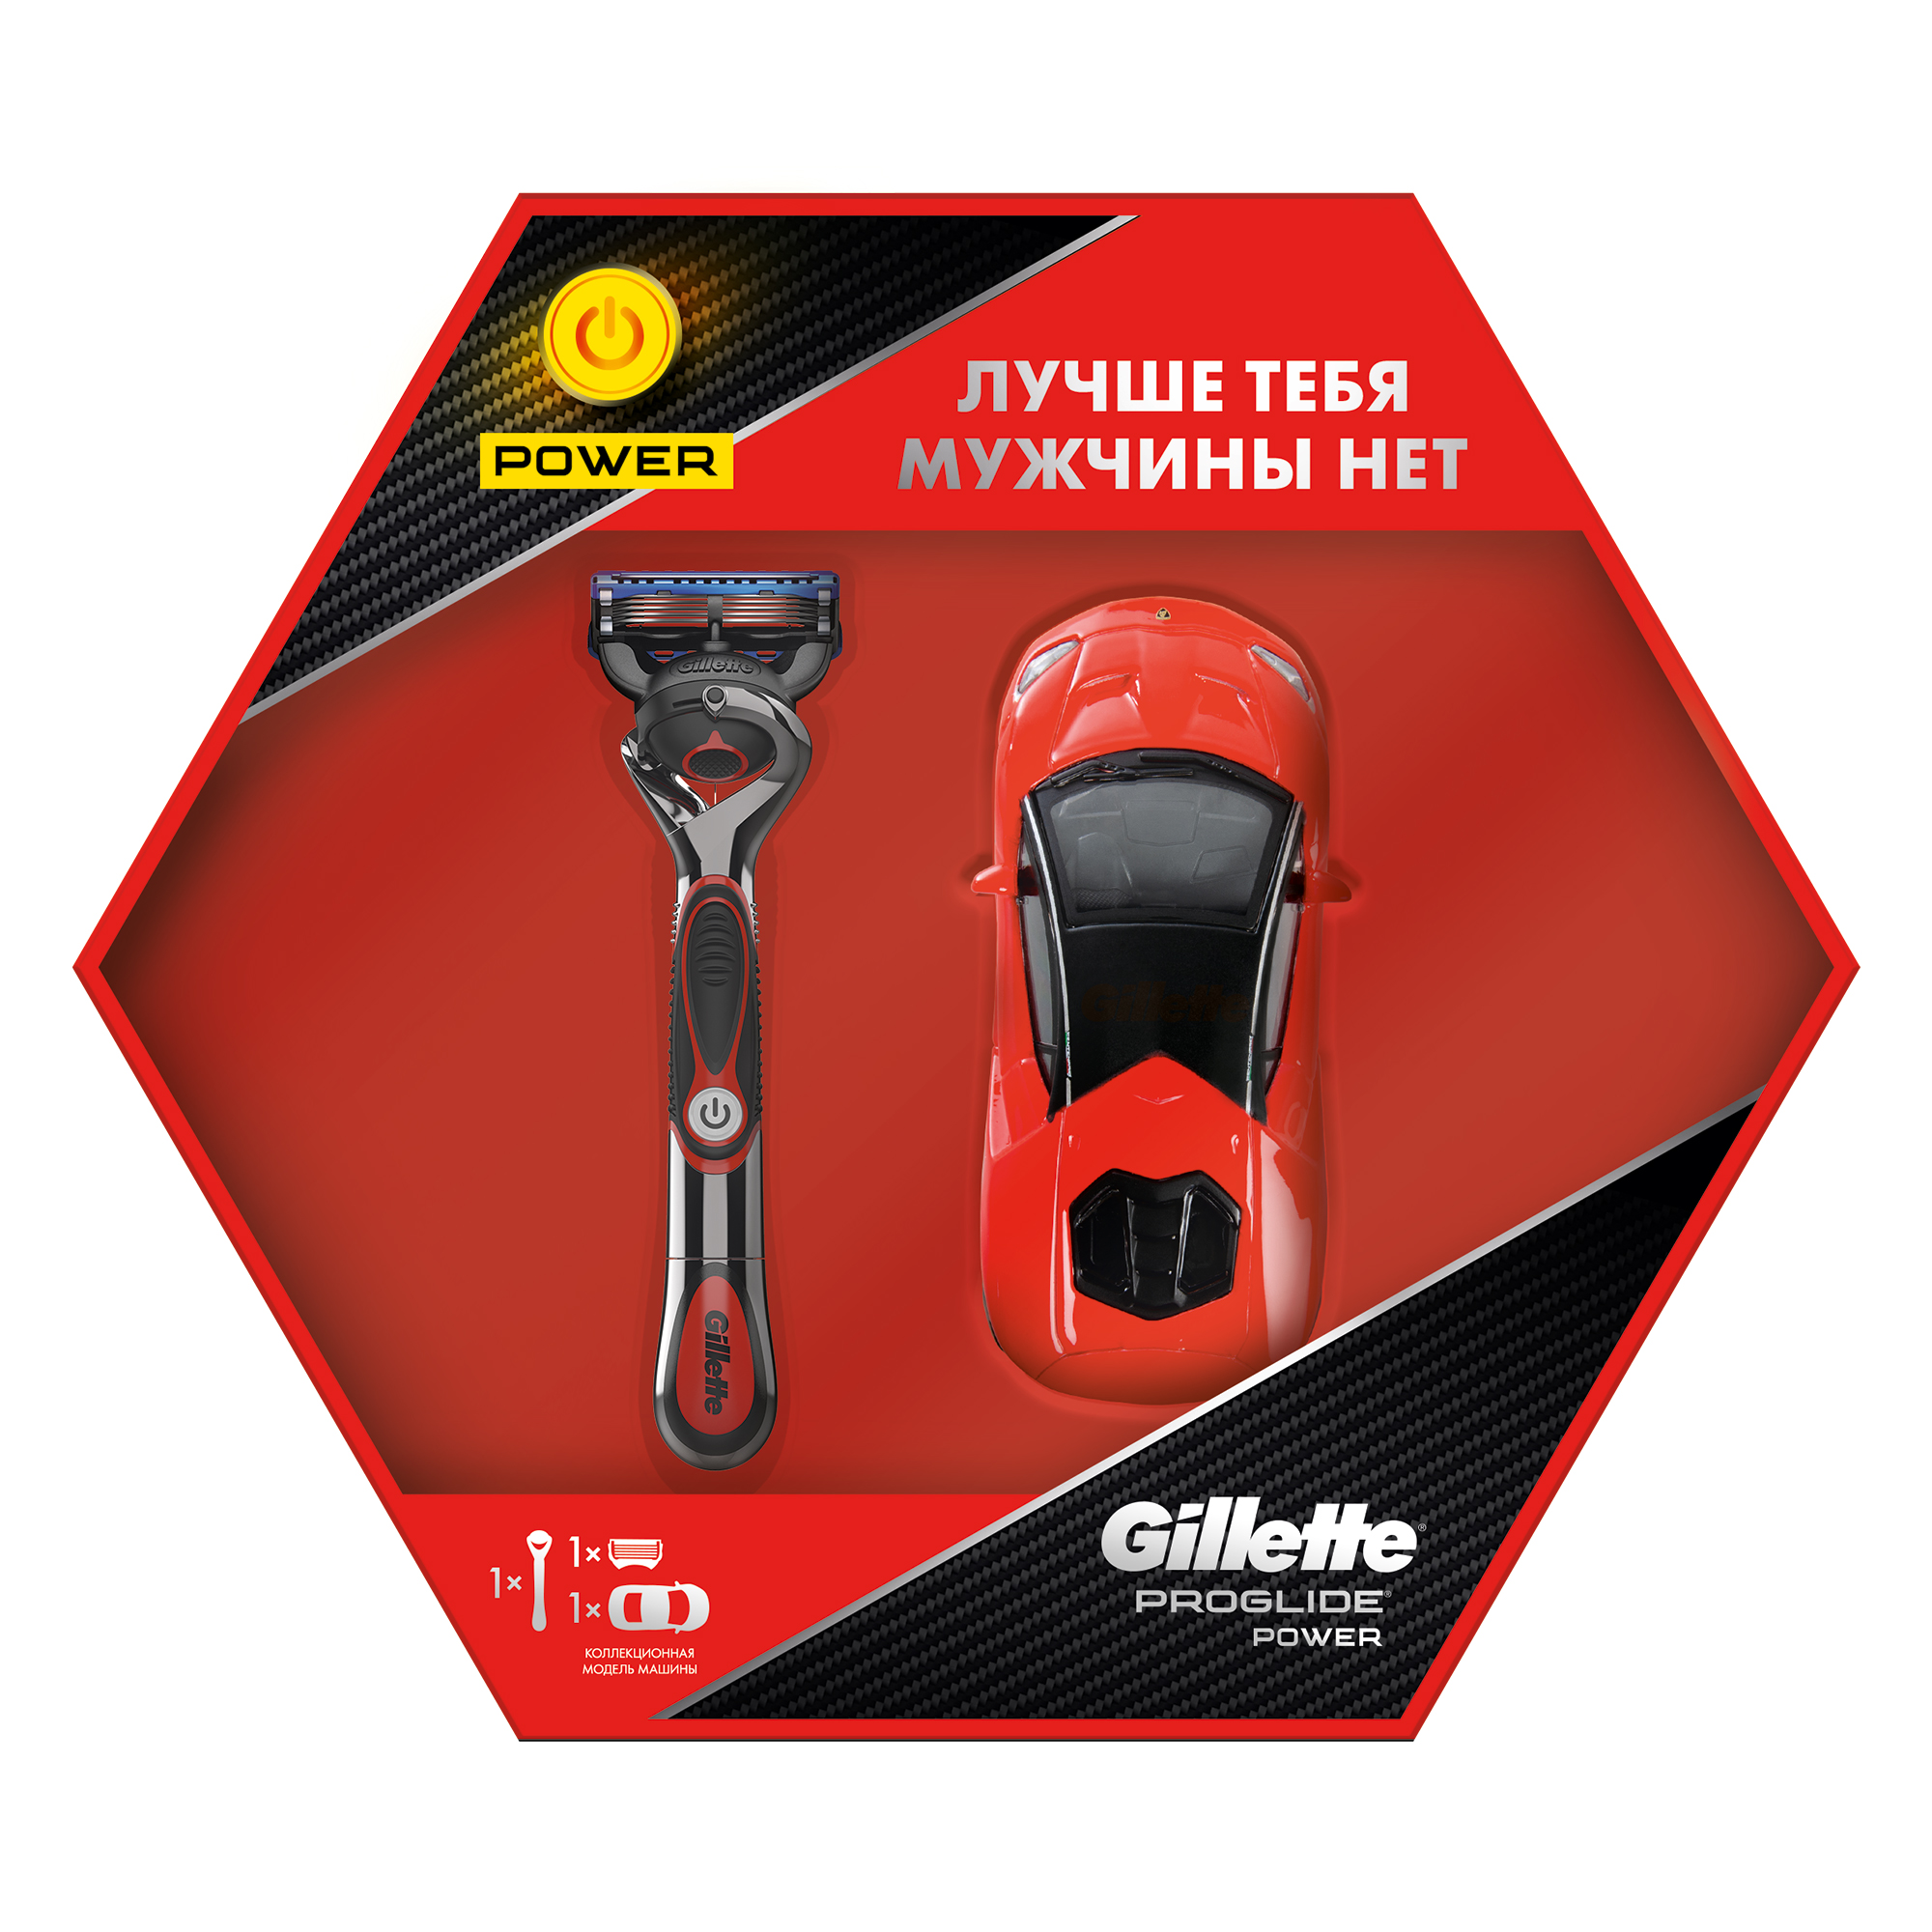 Подарочный набор Gillette Proglide Power бритва с 1 касс. с элем.питания + модель машины